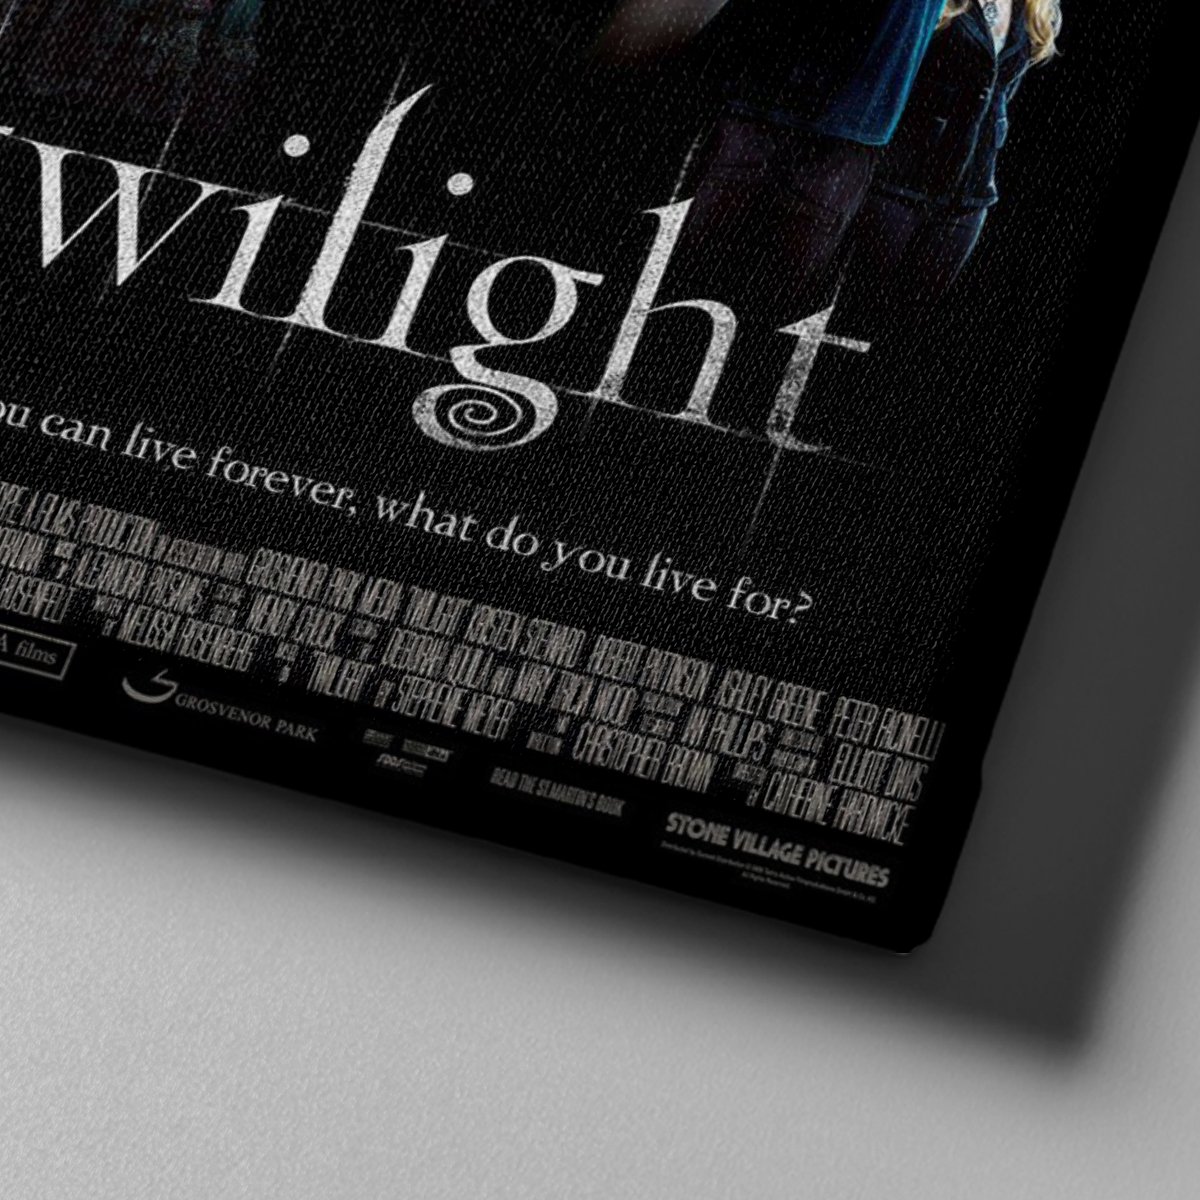 Market701 | Twilight Film Afişi Kanvas Tablo - 